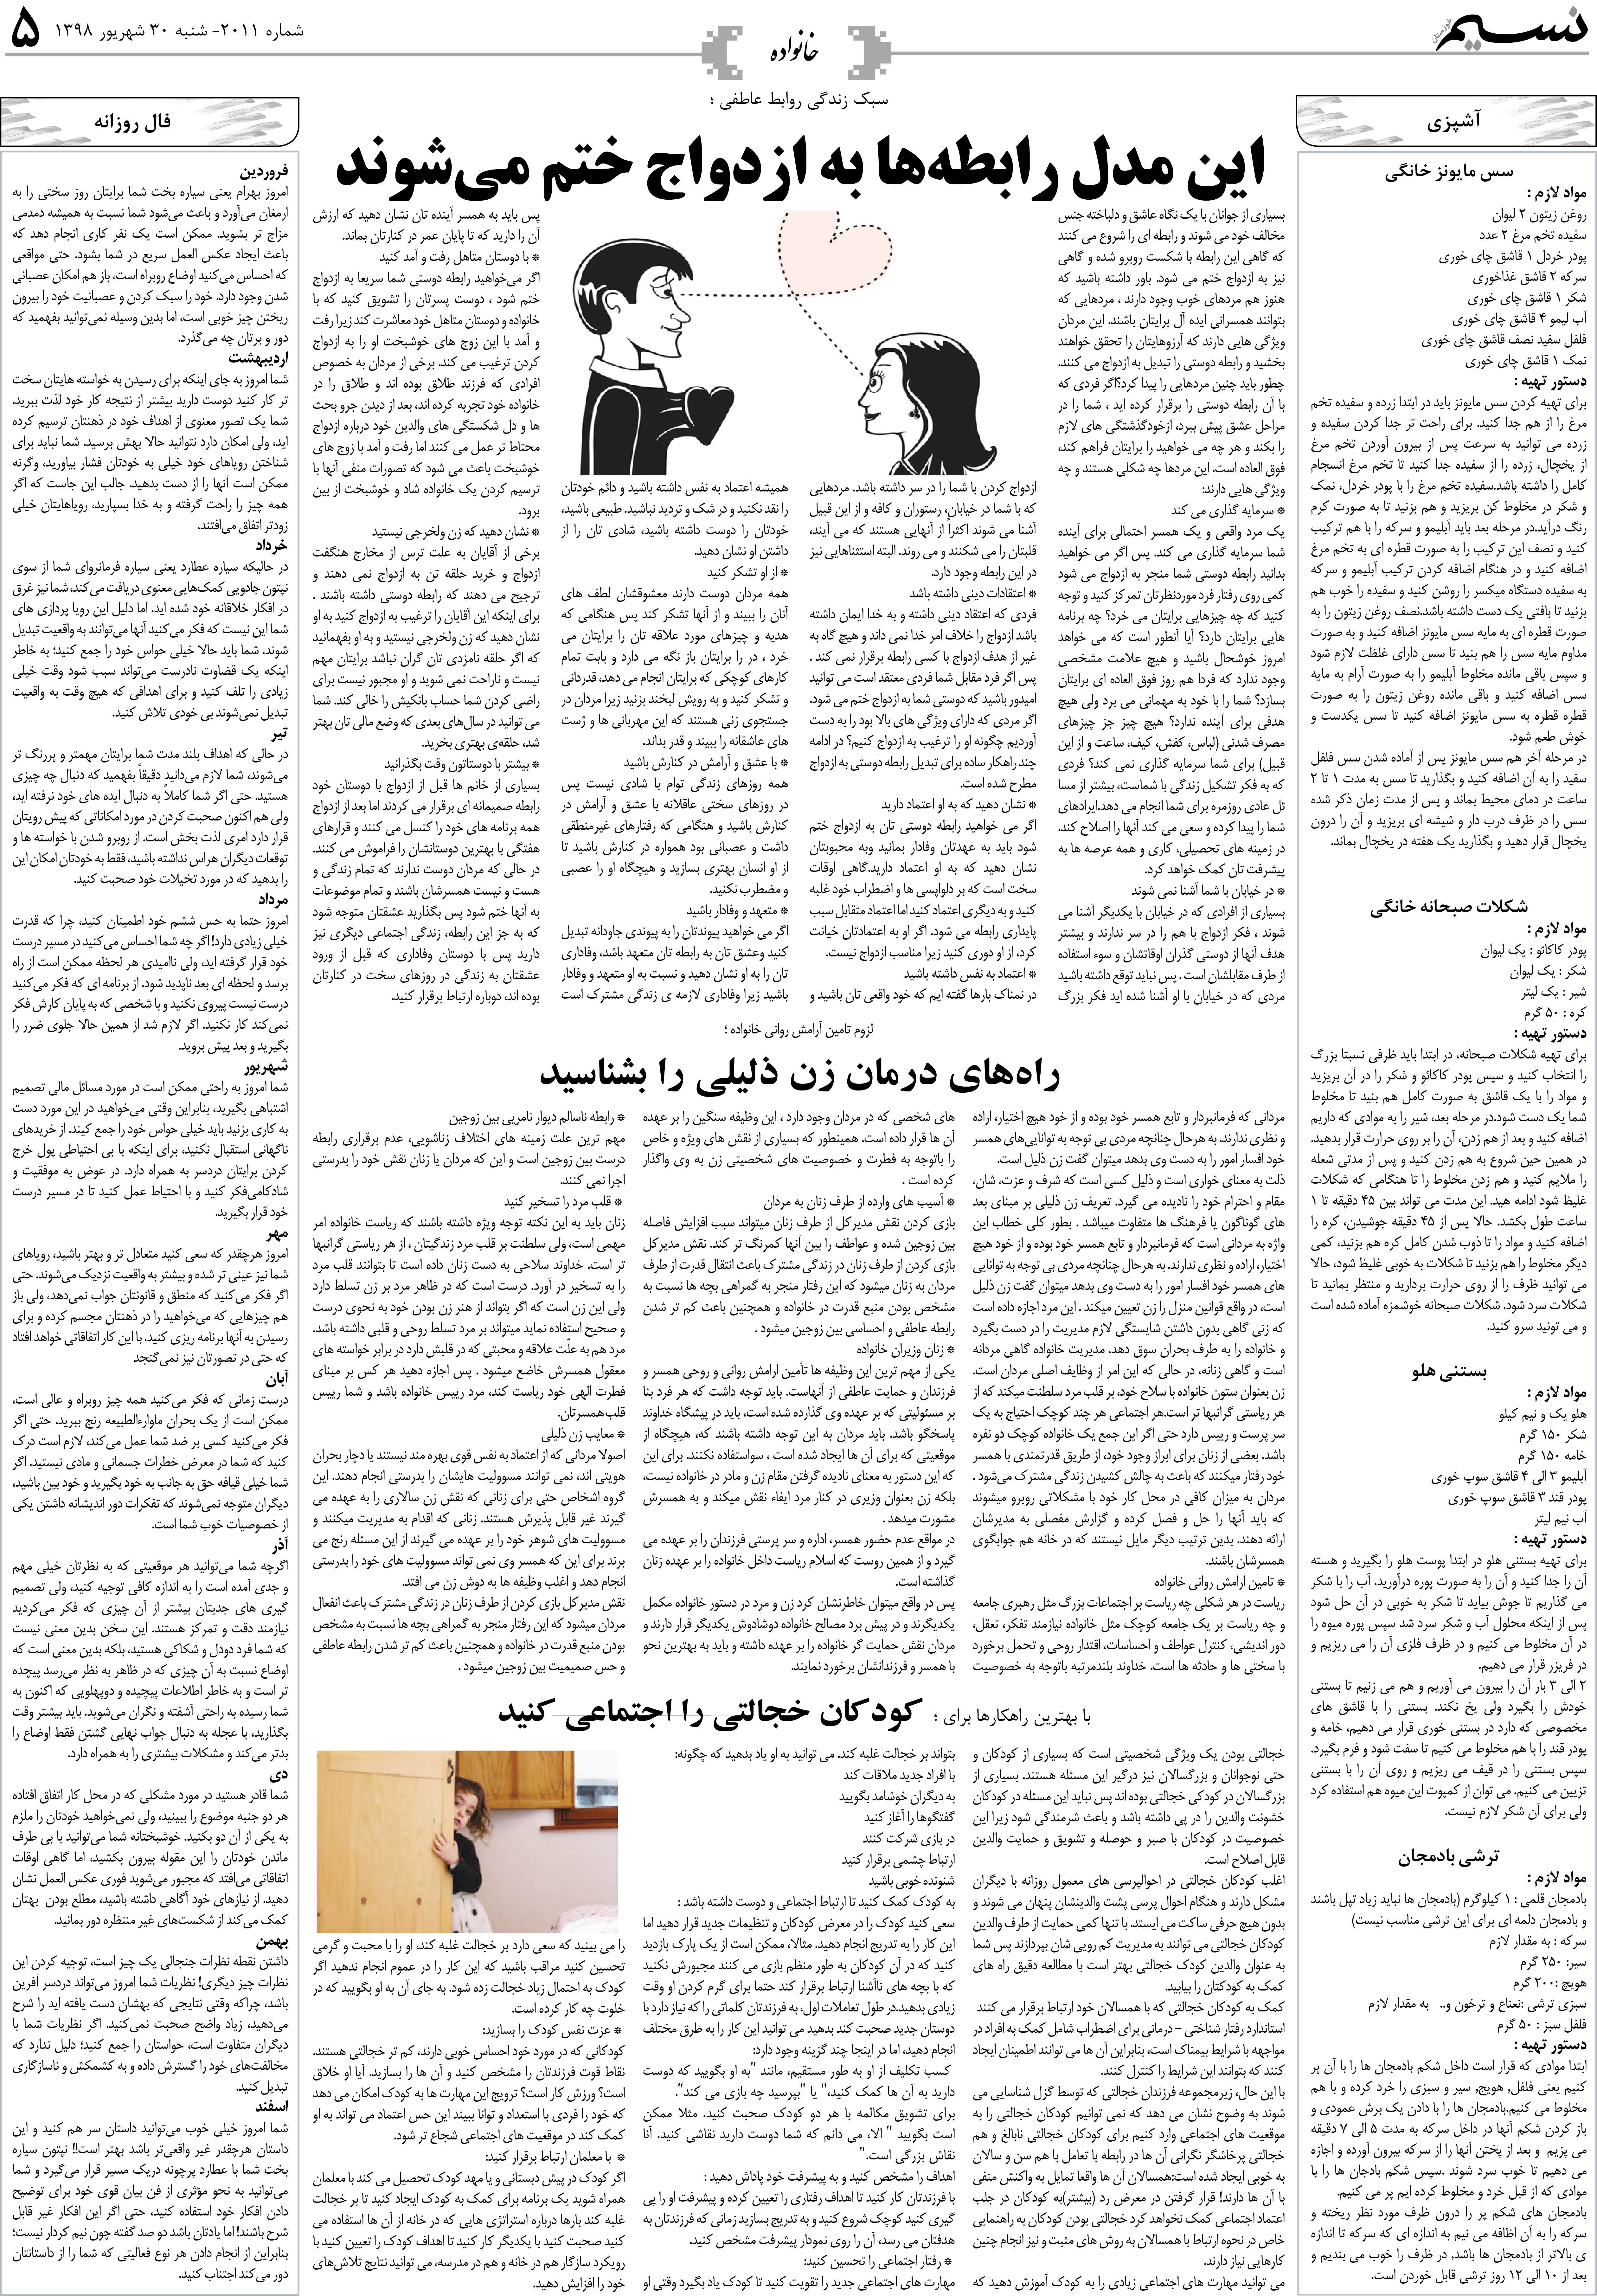 صفحه خانواده روزنامه نسیم شماره 2011